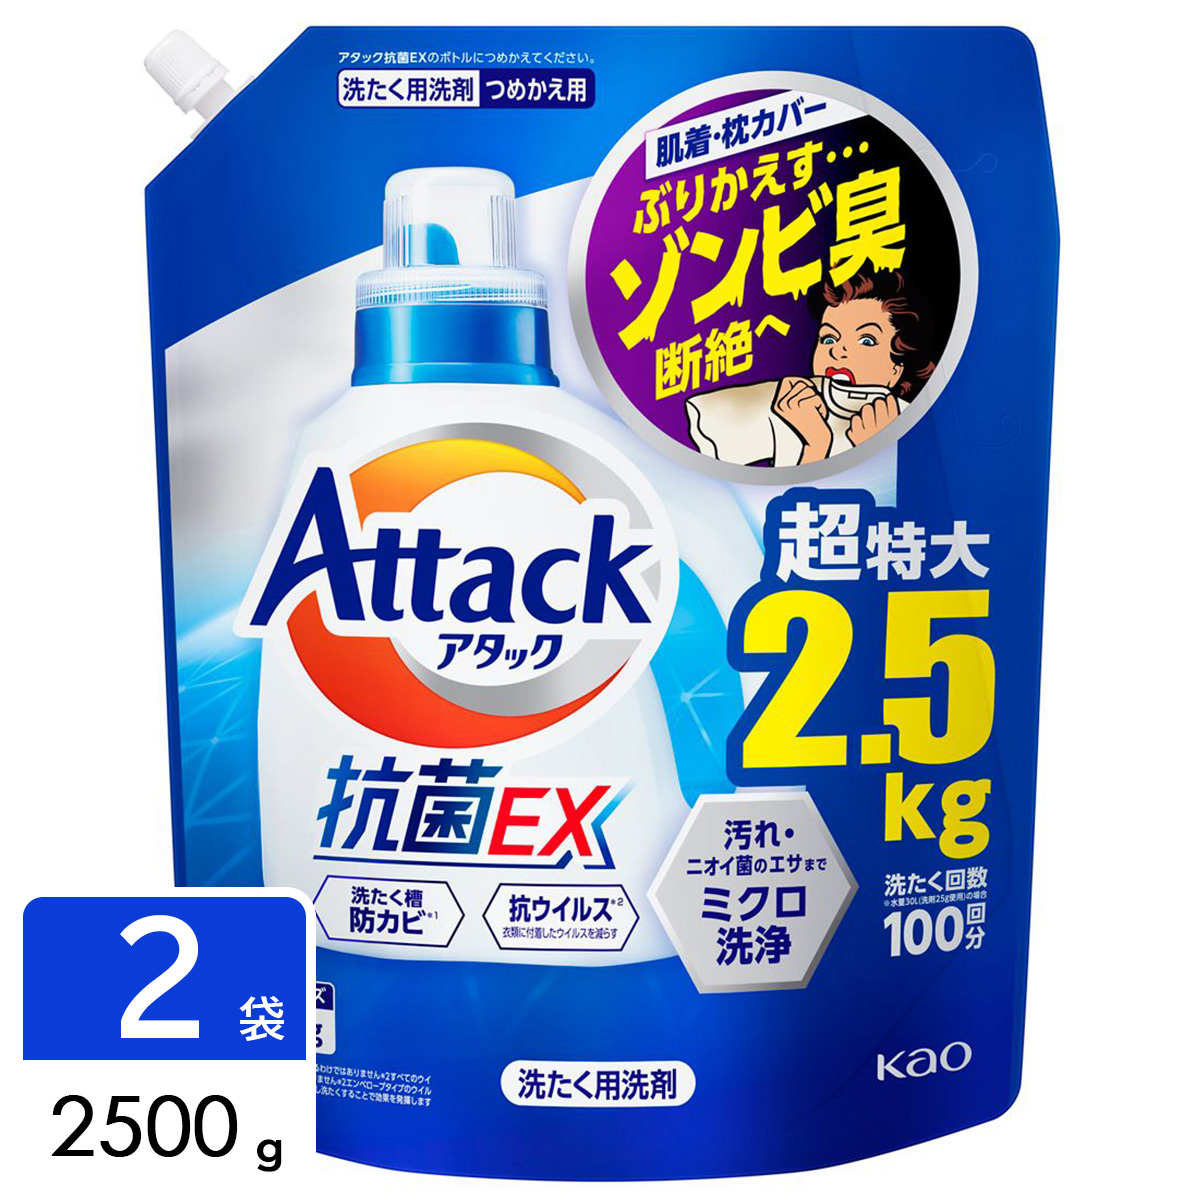 アタック抗菌EX 洗濯洗剤 詰め替え 2500g×2袋